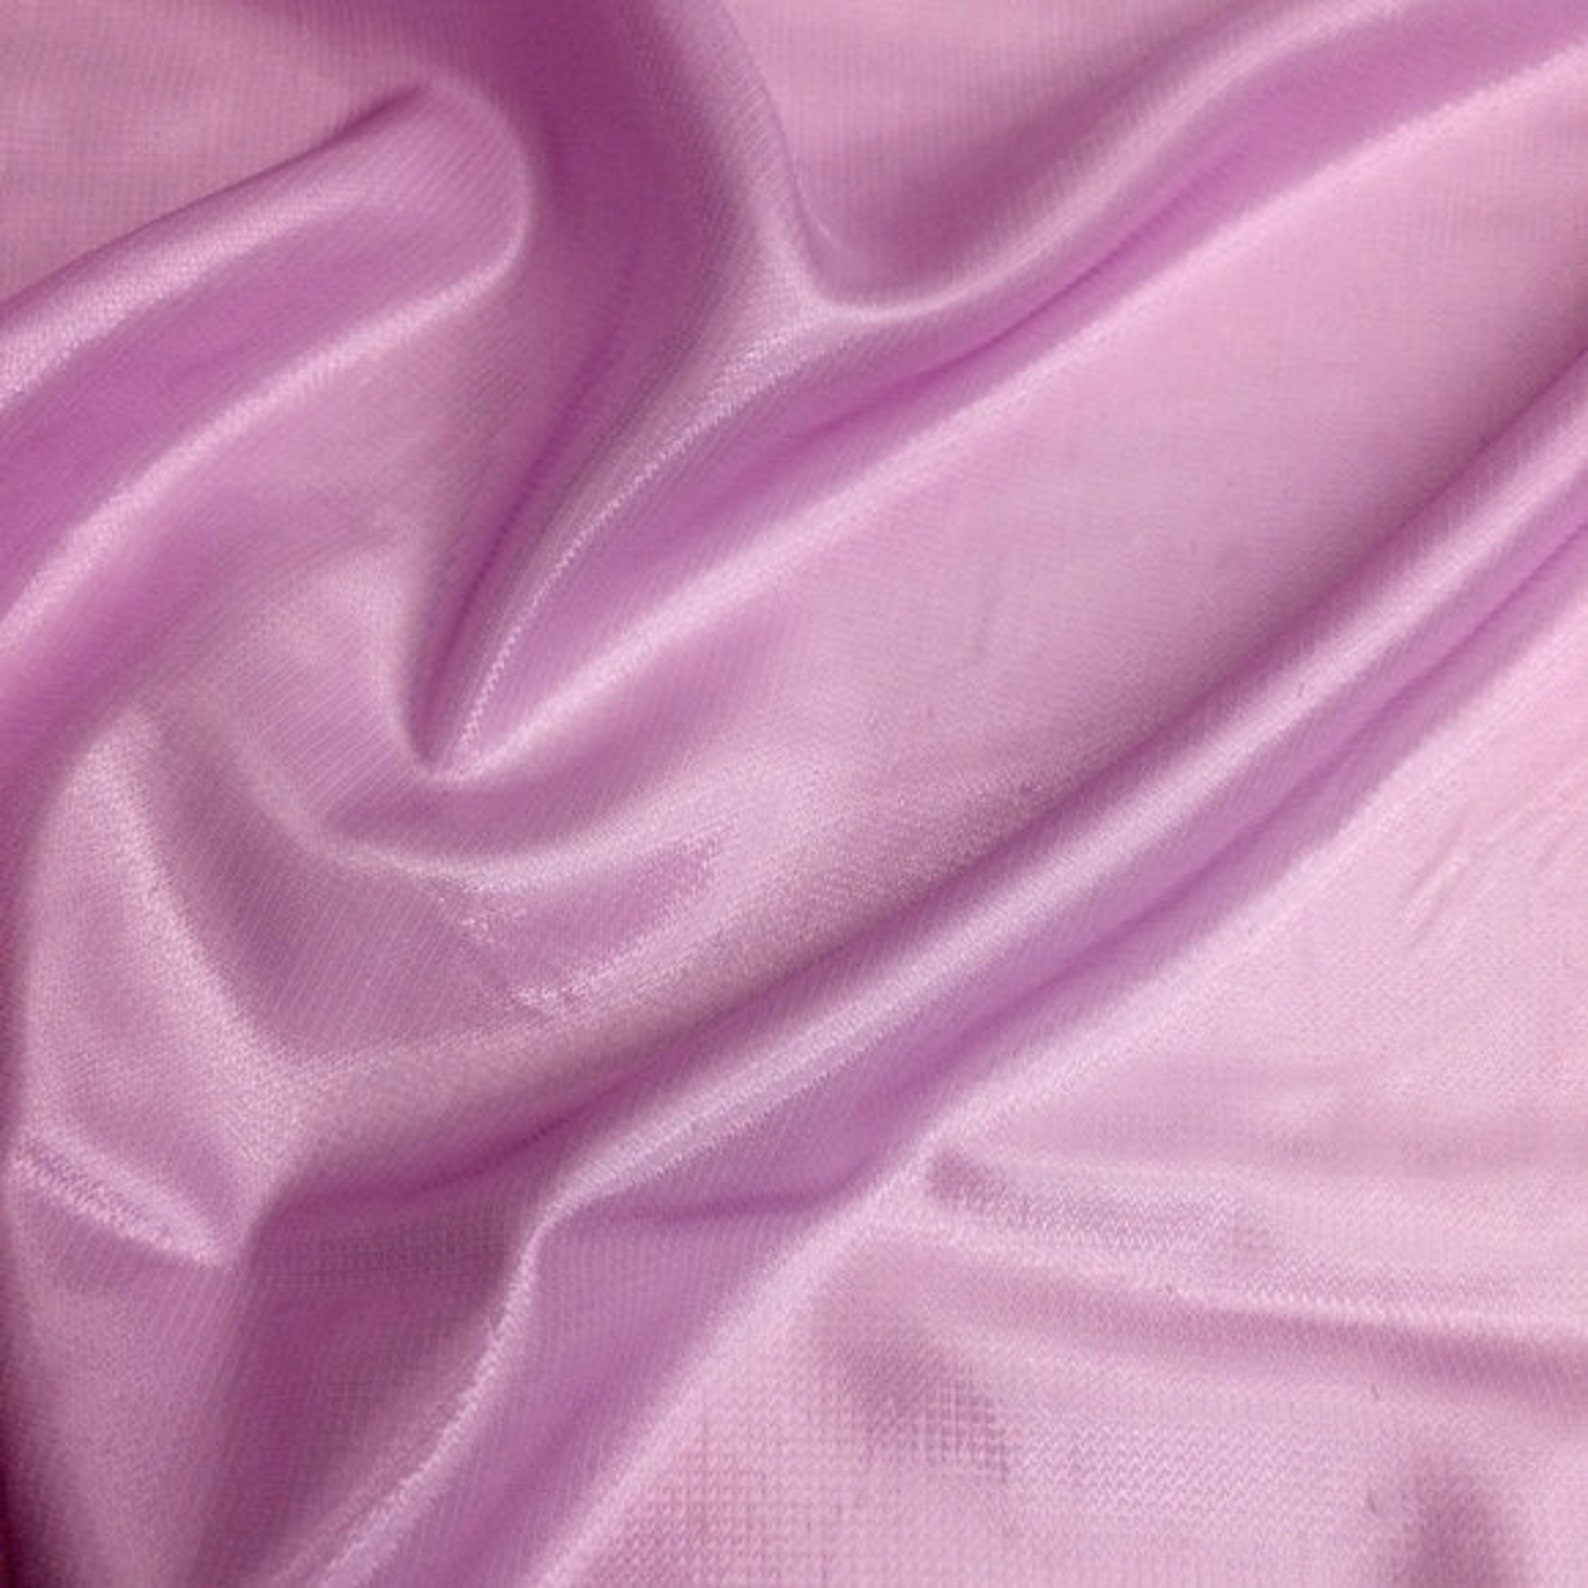 Сборка 1.19 fabric. Шелк металлик. Сиреневая ткань сатин хлопок. Японский шёлк атлас ткань фиолетовый металлик. Lilac Grey шёлк.